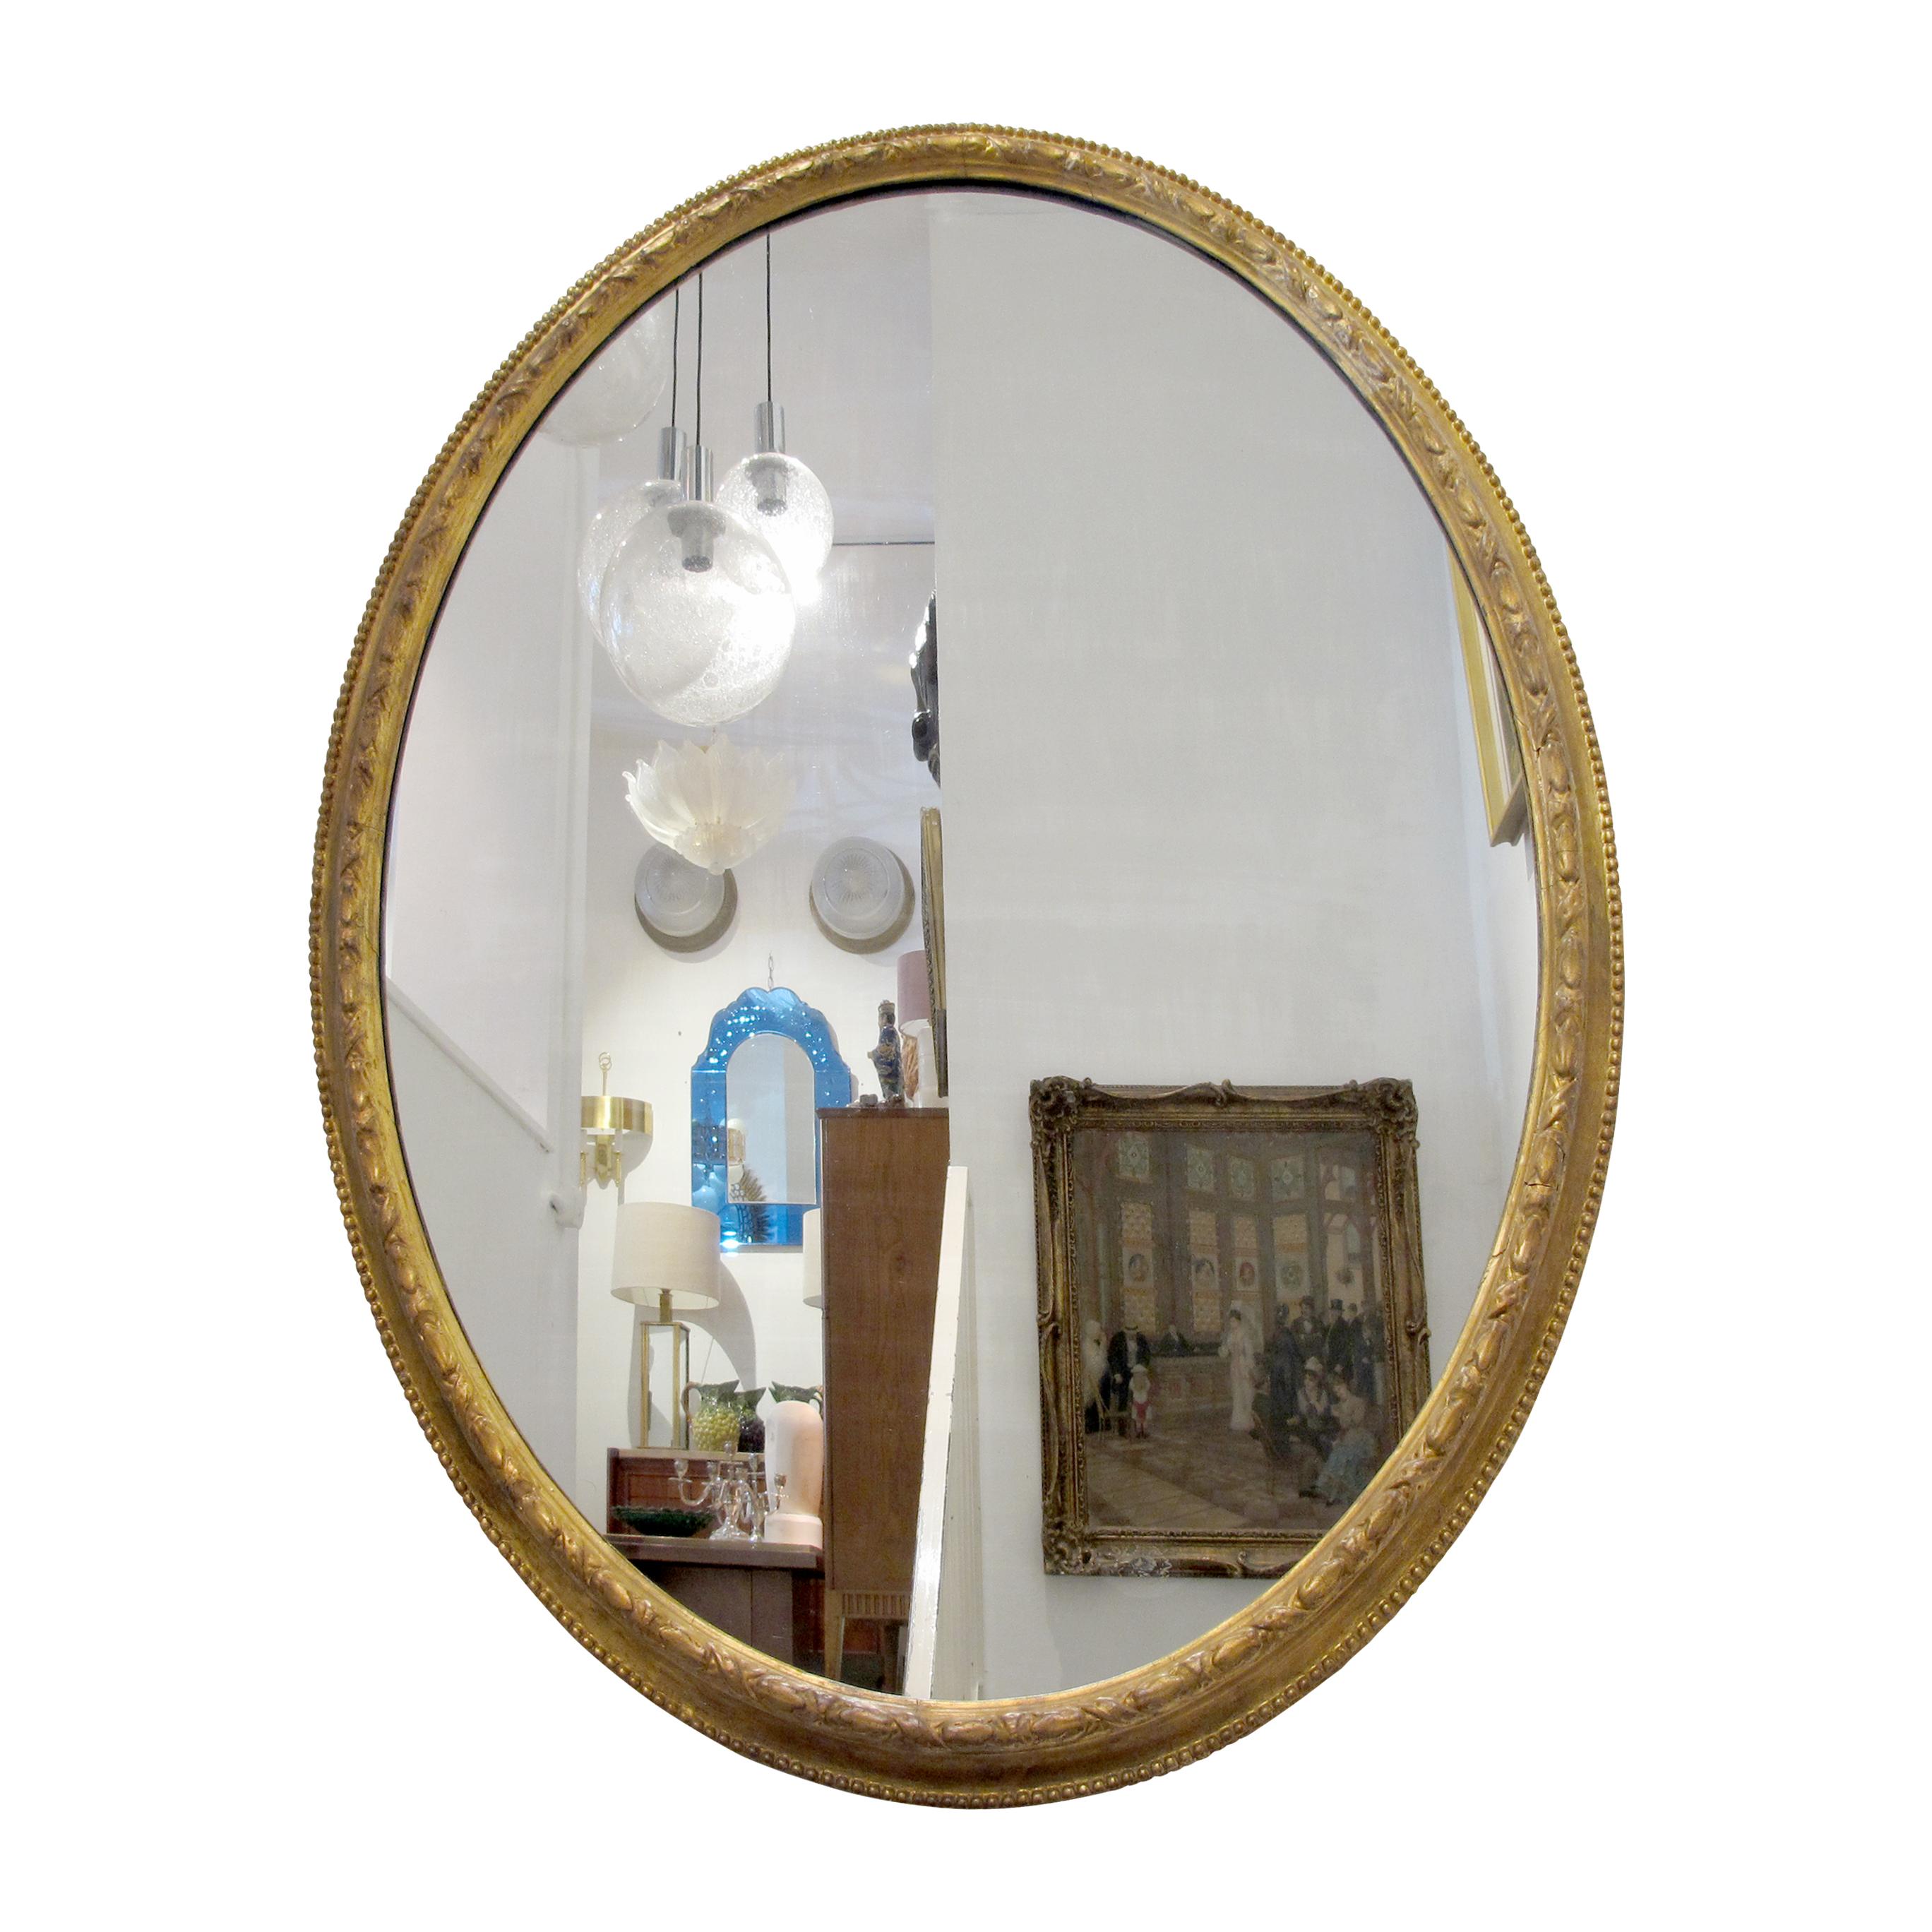 Ce grand miroir élégant capture l'essence du design géorgien, caractérisé par ses proportions et son ornementation classiques. Le cadre en bois doré à la gesso est en très bon état et comporte son miroir d'origine avec peu de traces de rousseur.